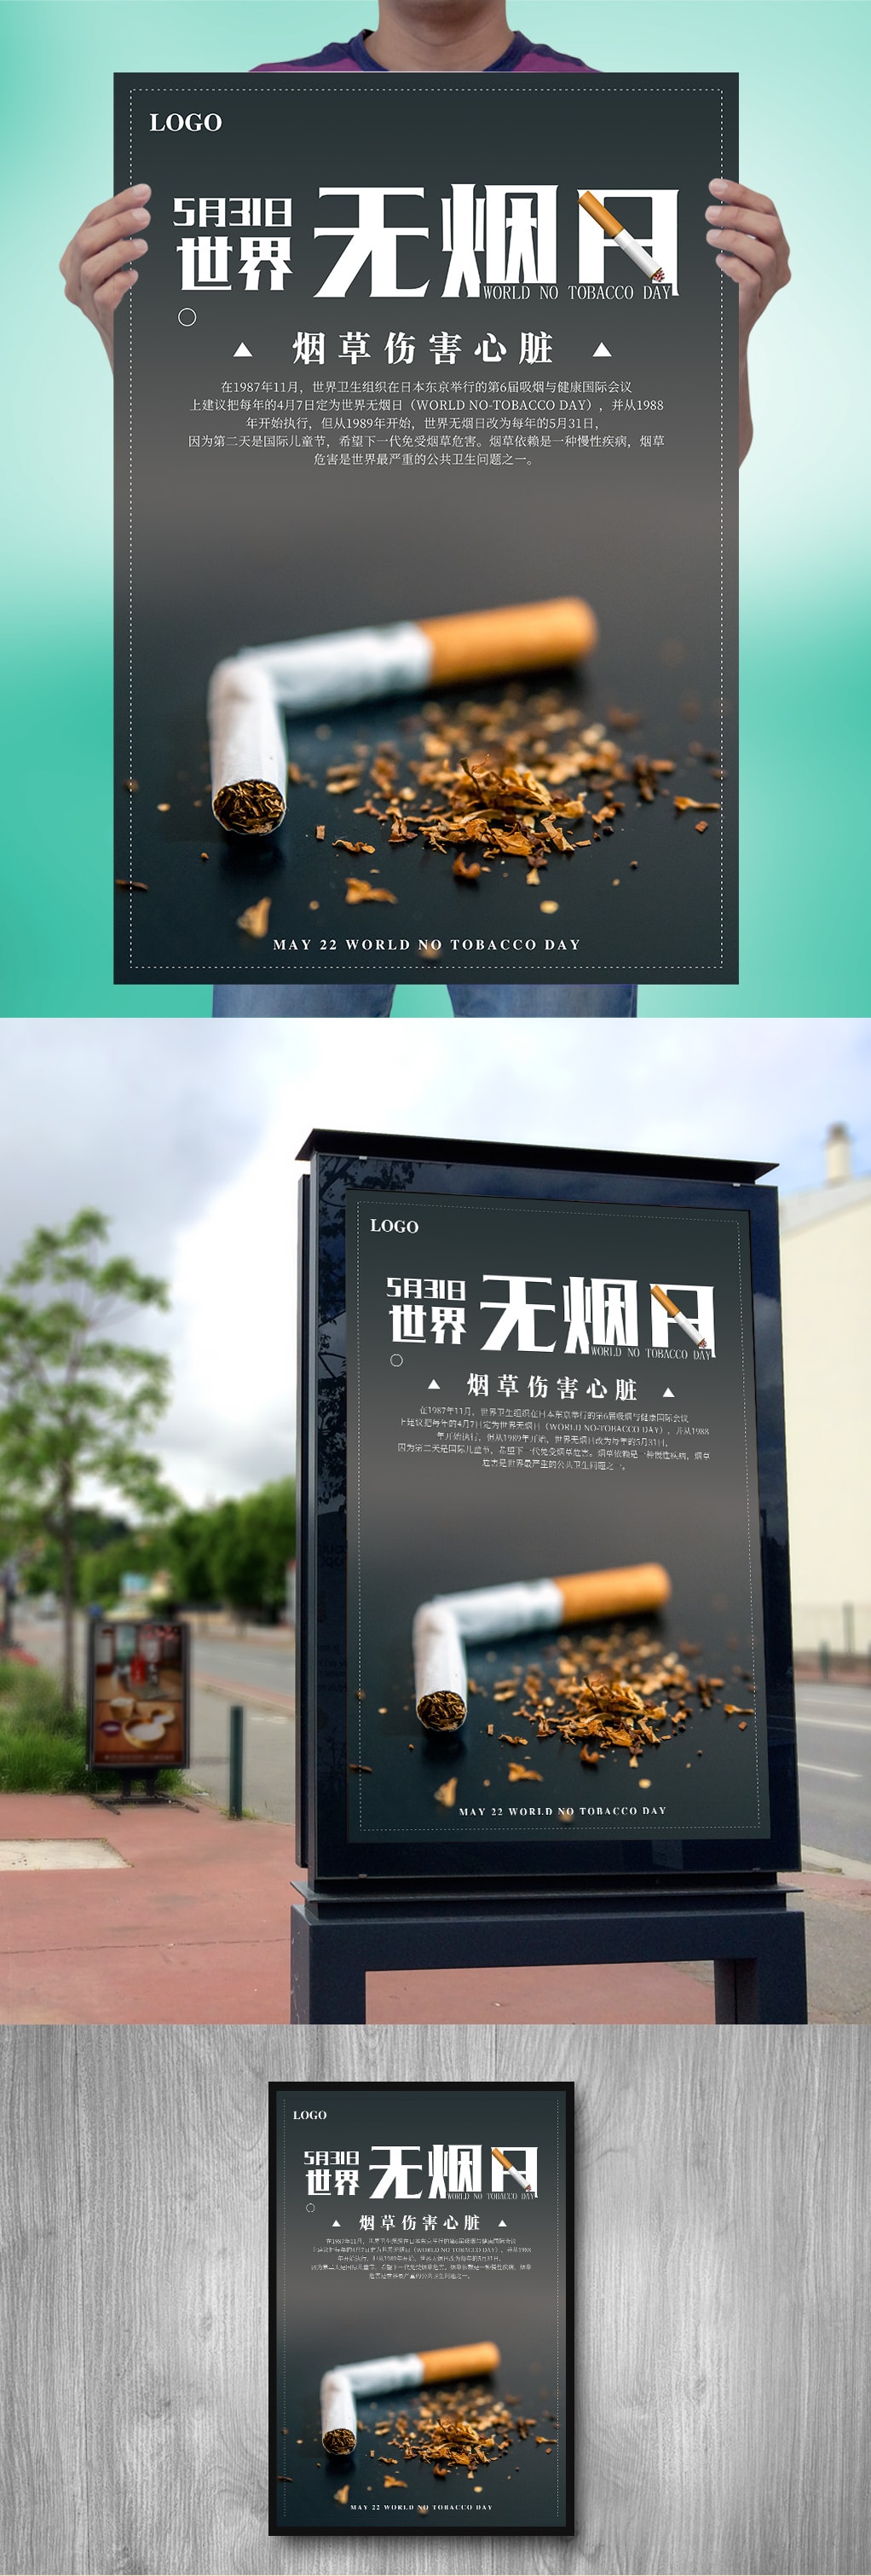 创意世界无烟日海报设计